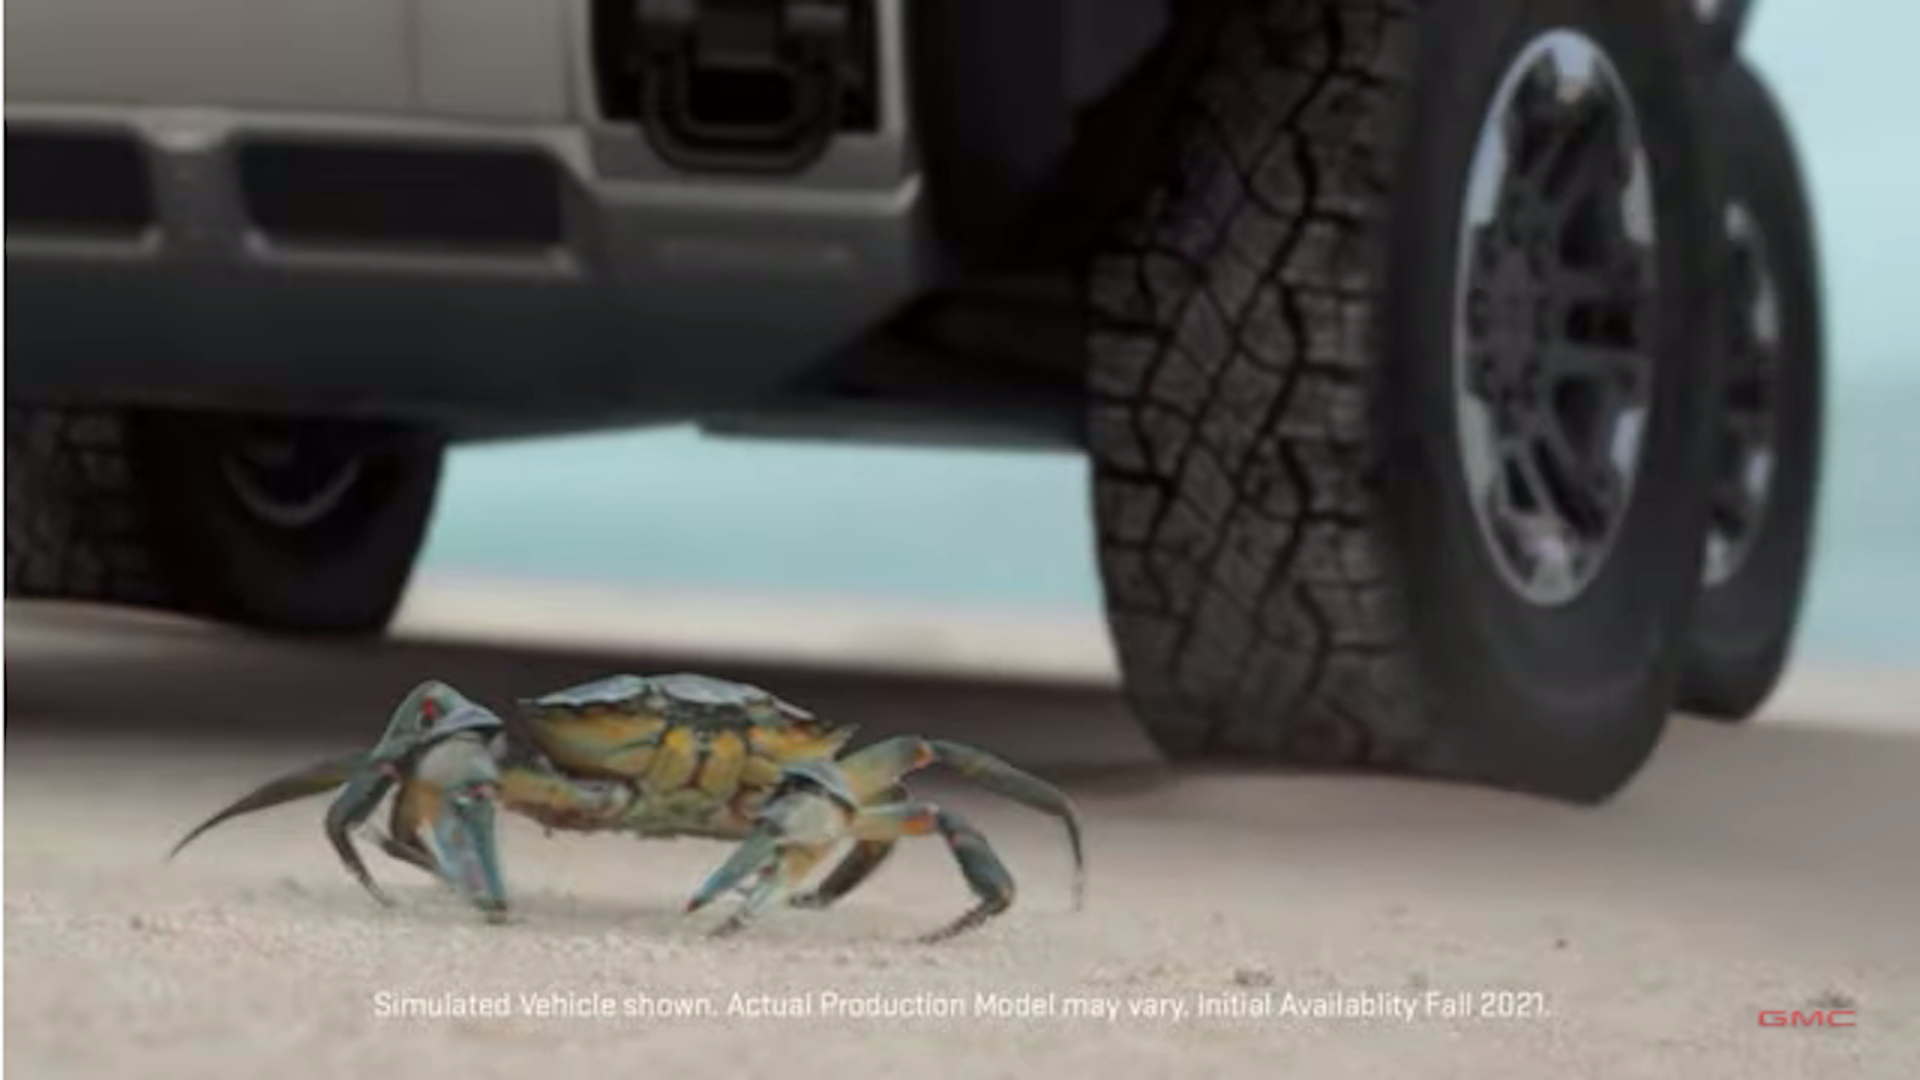 Screenshot of GMC Hummer video teaser